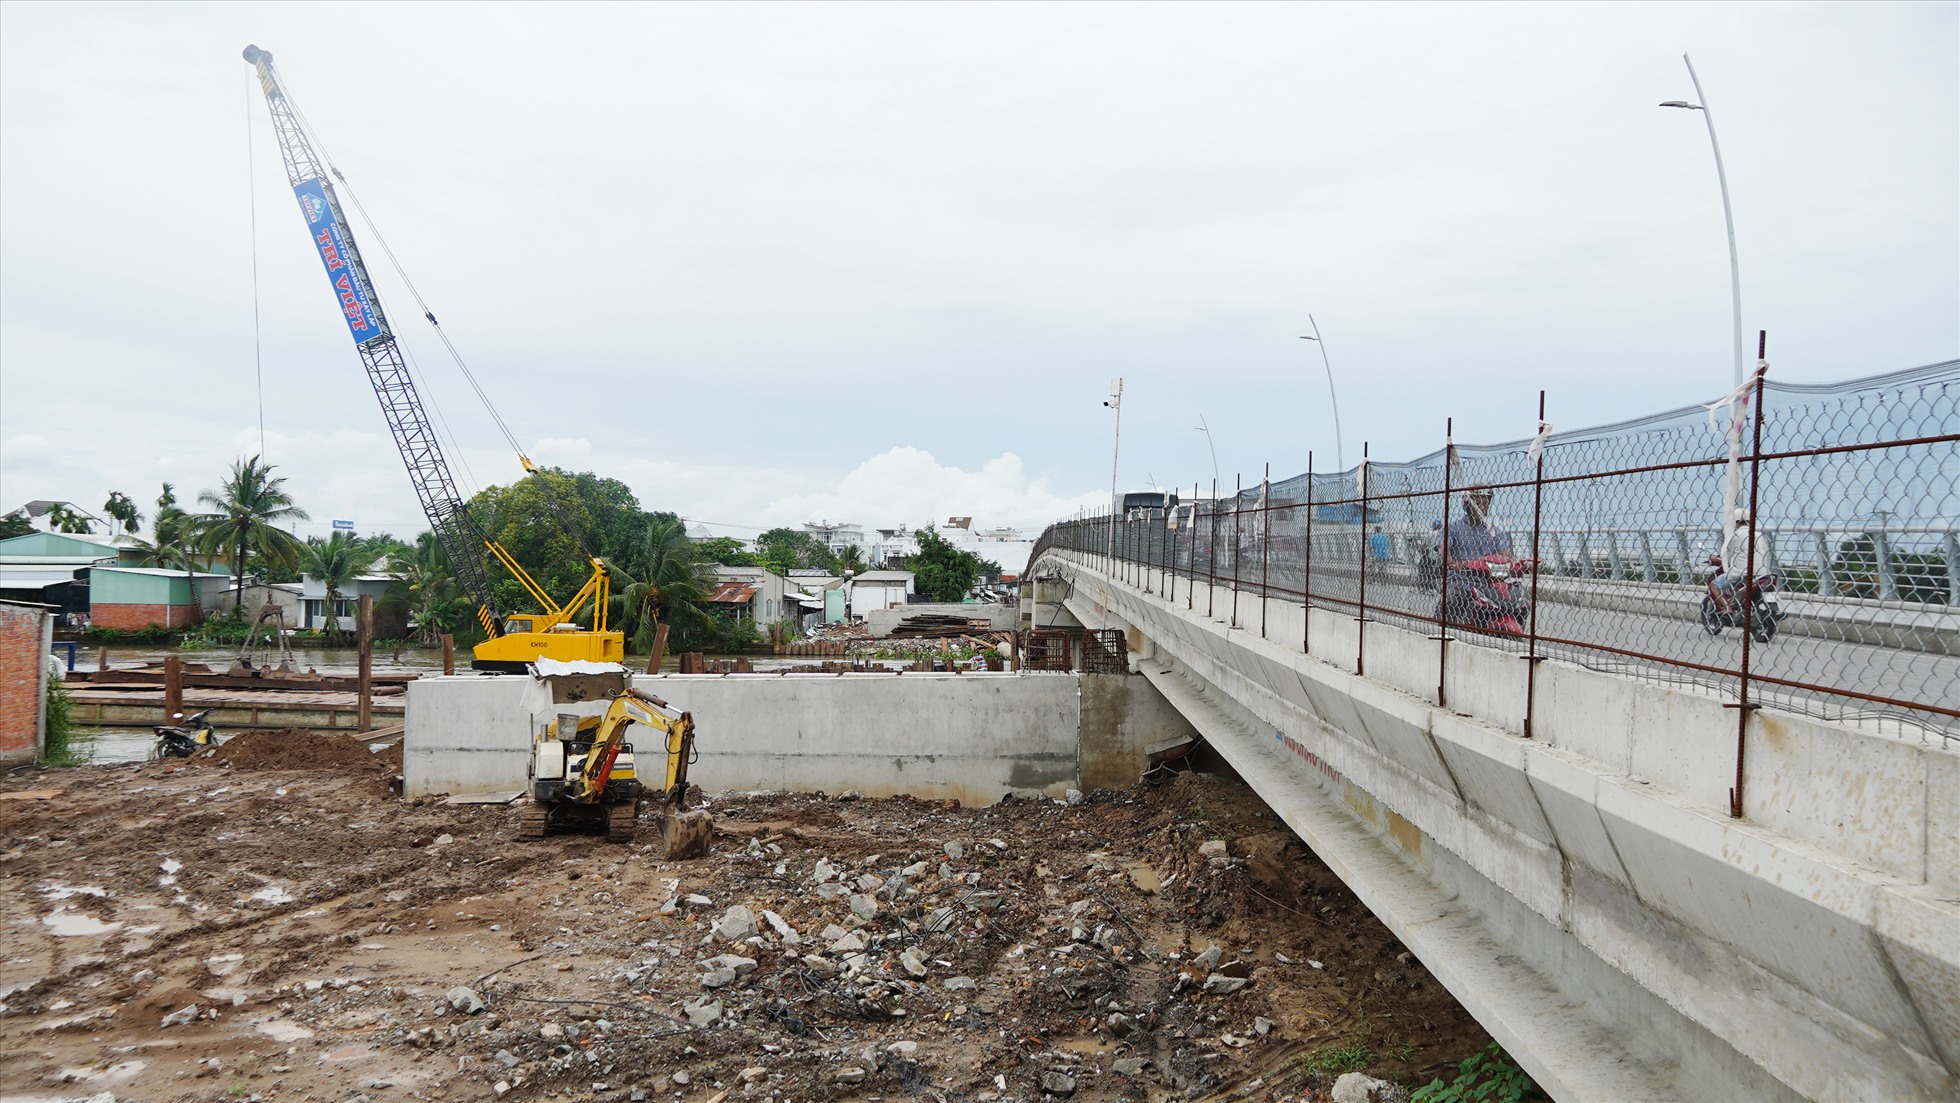 Dự án cầu Tây Đô có tổng mức đầu tư hơn 208 tỉ đồng nối thị trấn Phong Điền với xã Nhơn Ái (huyện Phong Điền, Cần Thơ). Đến cuối tháng 5, tiến độ thi công đạt hơn 60%. Theo đơn vị thi công, về phần mặt cầu có thể hoàn thành theo chỉ đạo của Chủ tịch UBND TP Cần Thơ.